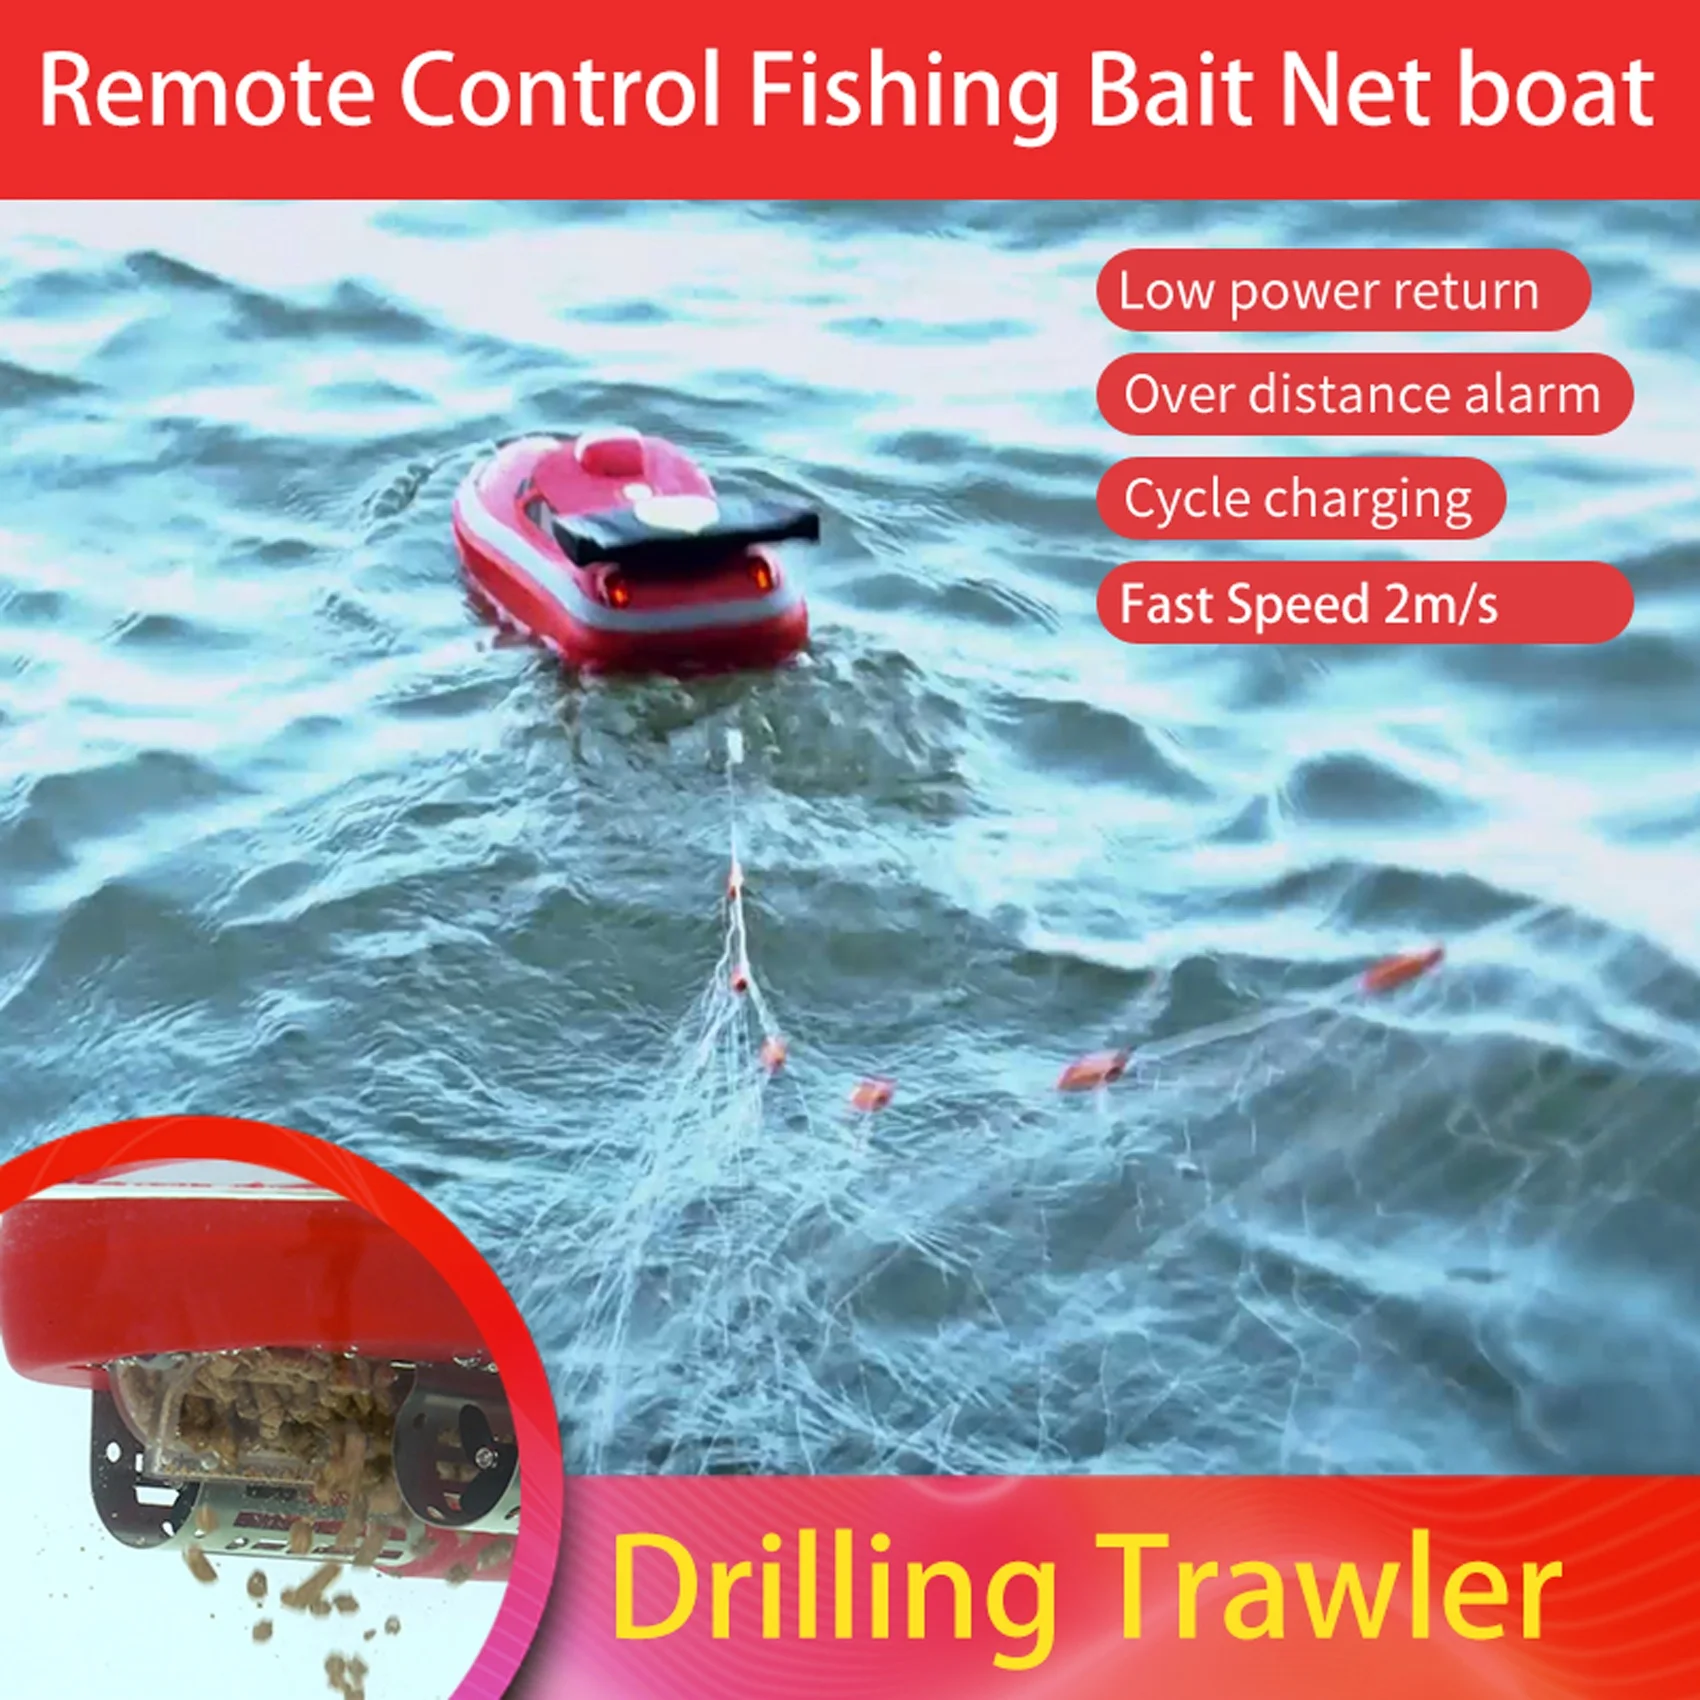 Mini fishing bait boat remote control